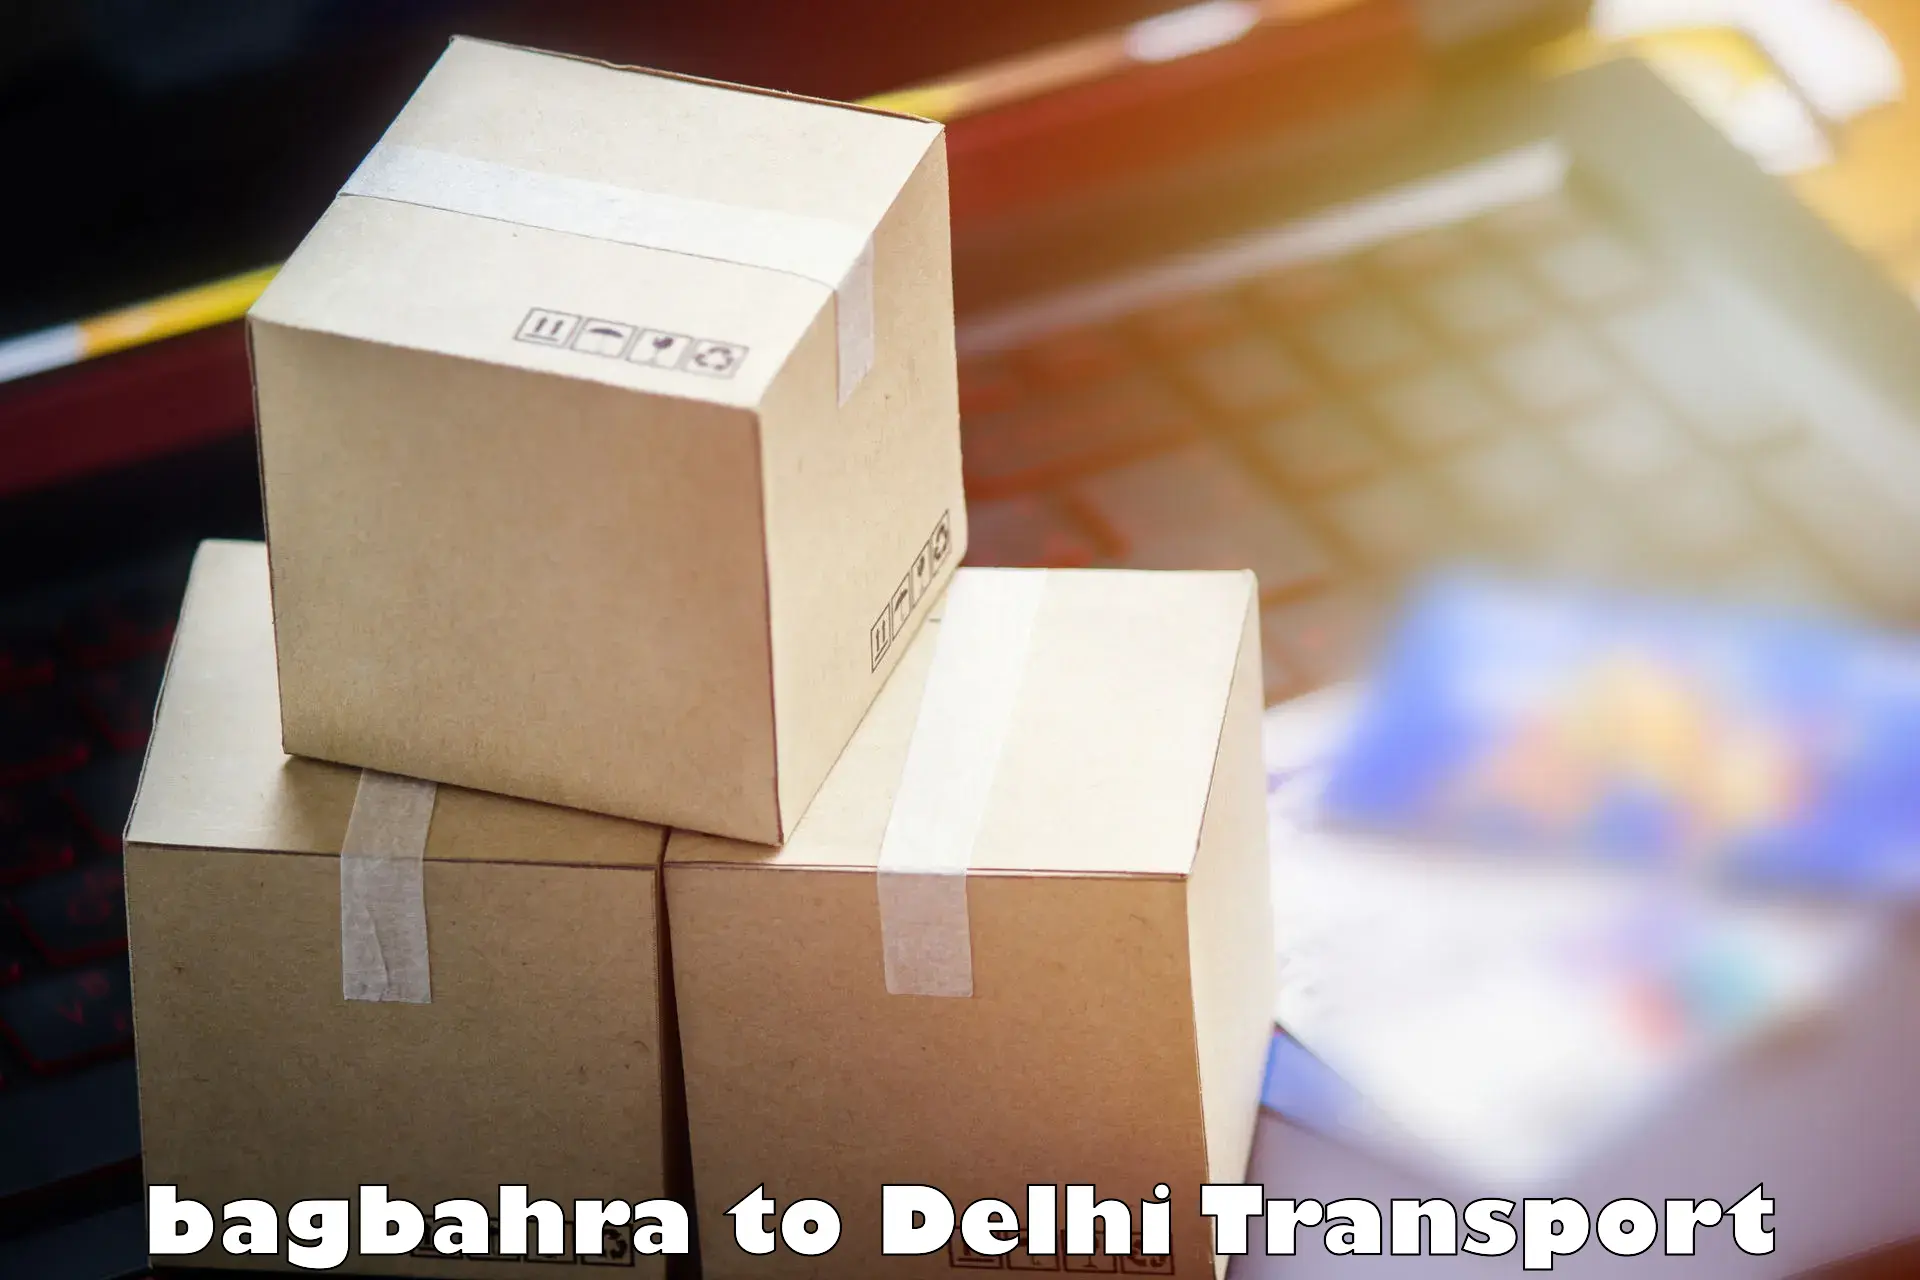 Sending bike to another city bagbahra to Jamia Millia Islamia New Delhi